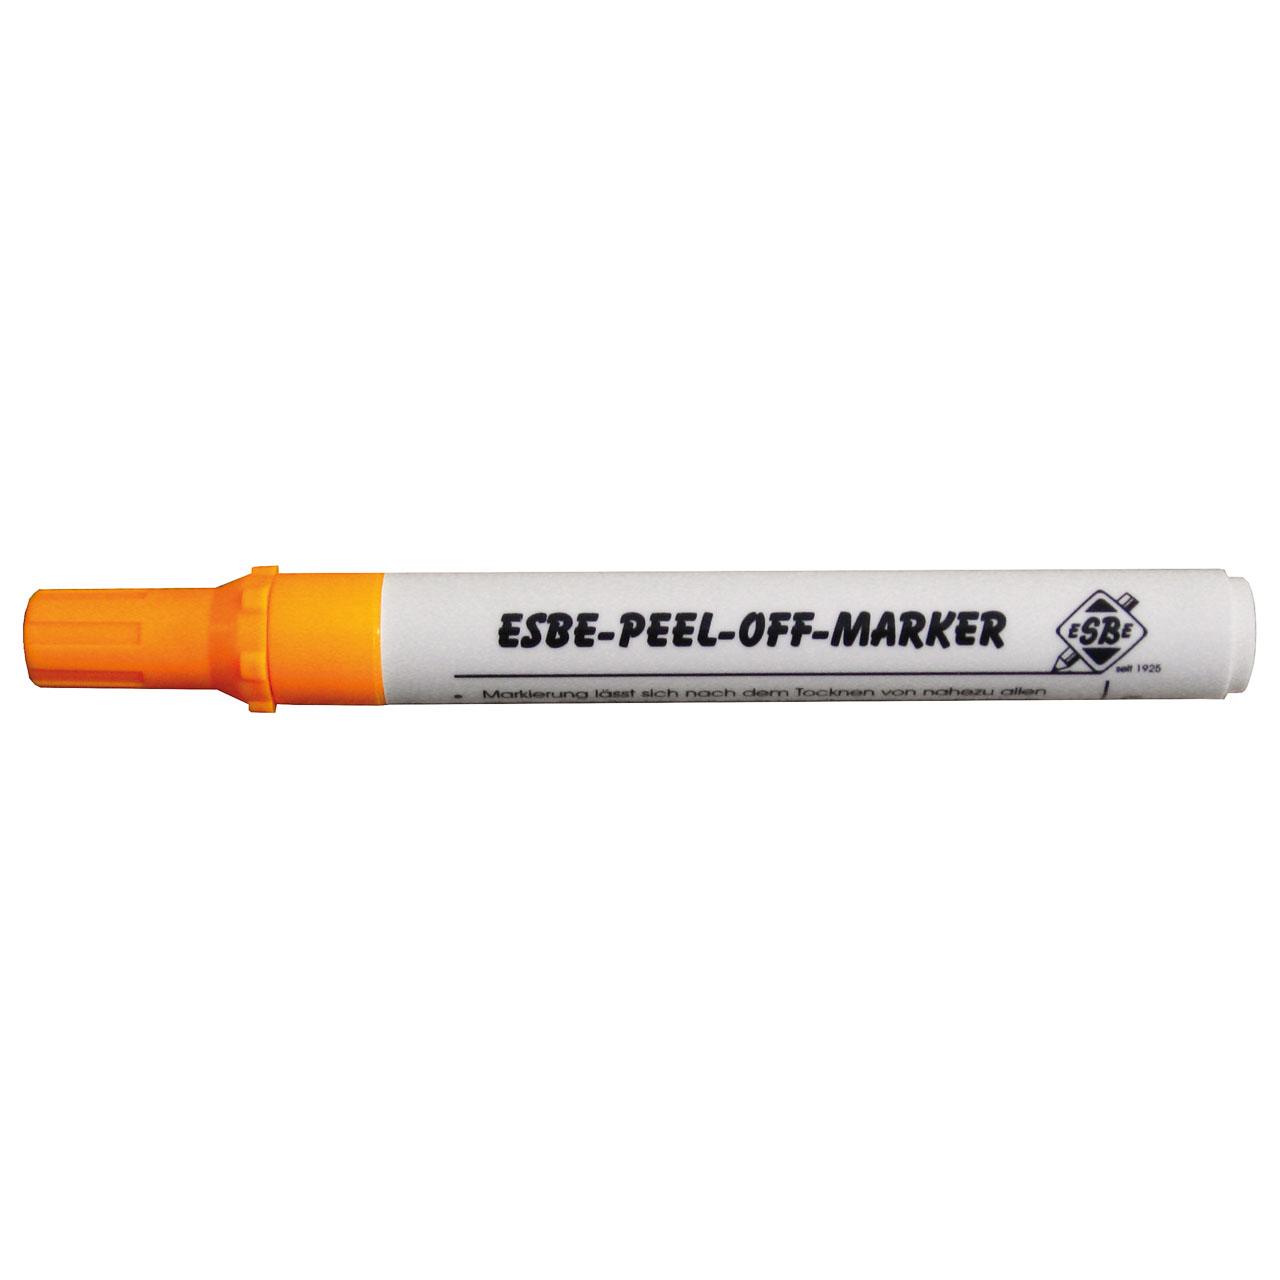 Peel-Off-Marker